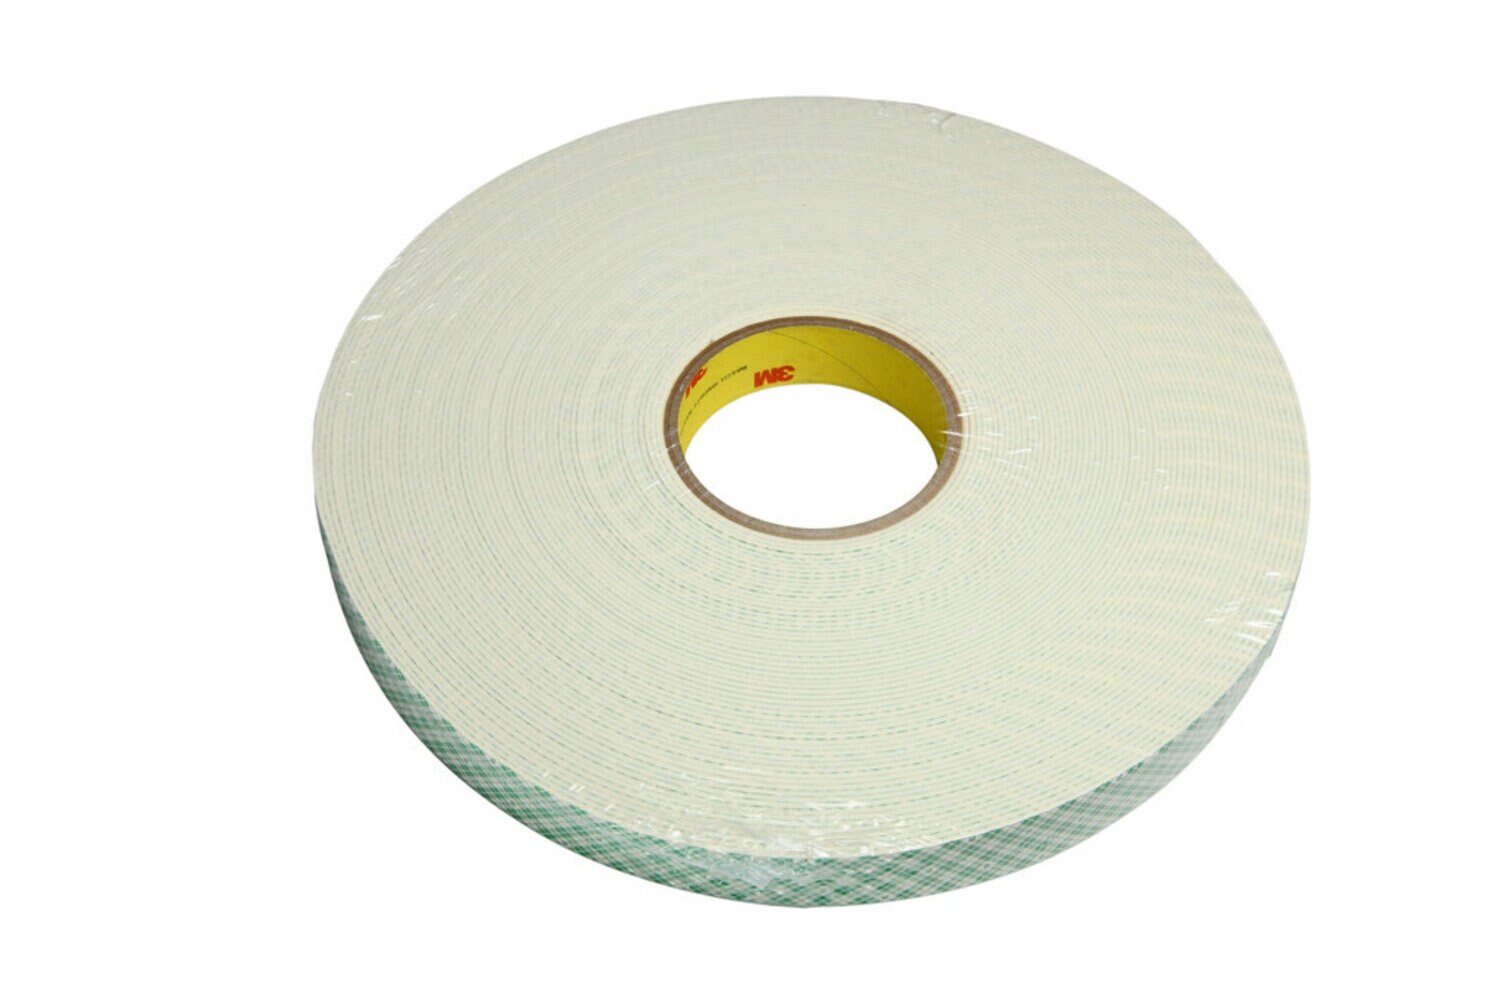 Styrofoam Cone Bulk-6X3 (48 Piece(s))